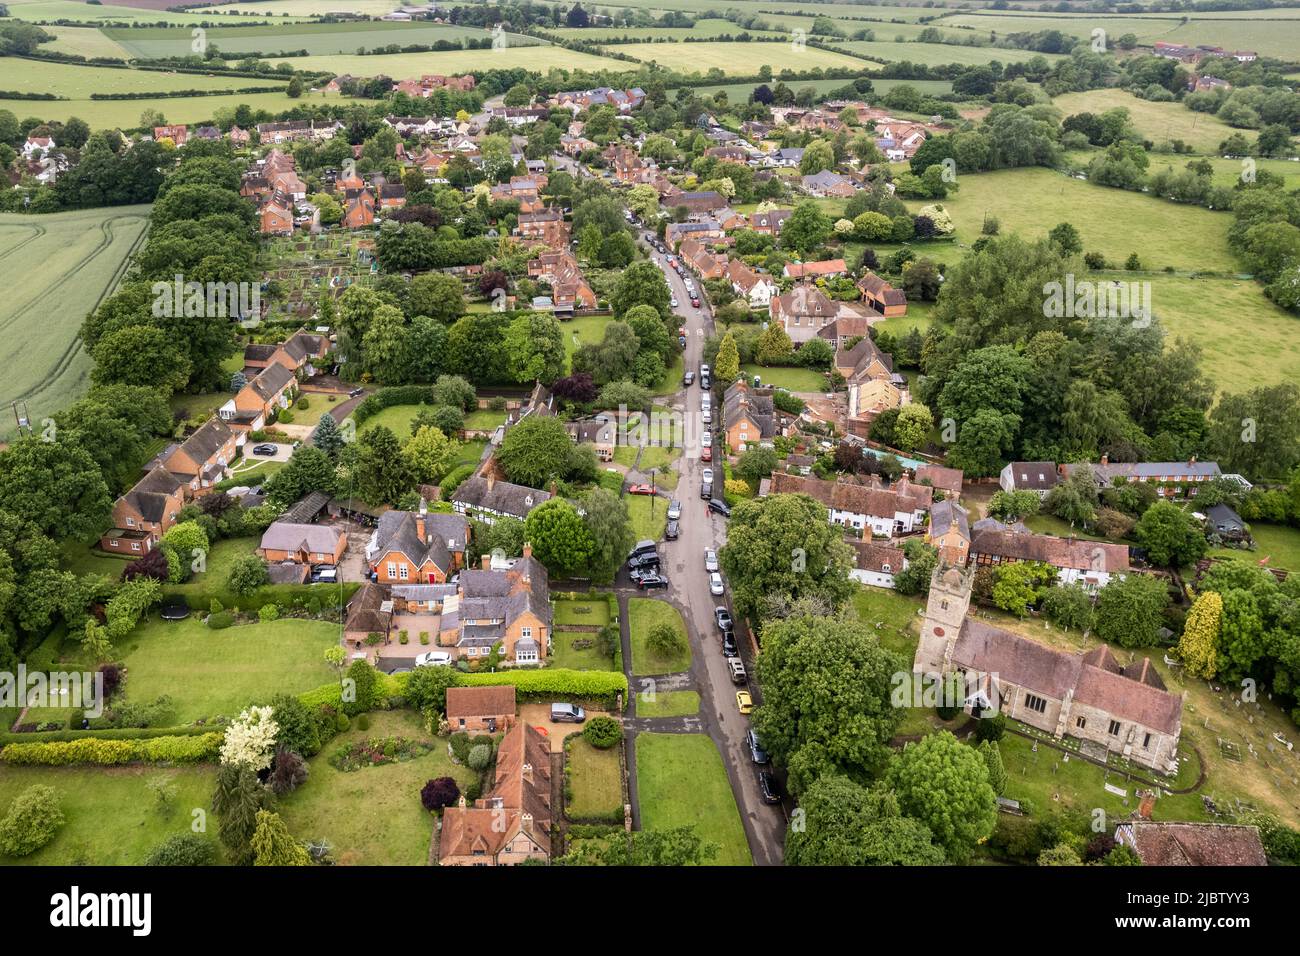 Das malerische Dorf Clifford Chambers, Warwickshire, Großbritannien, aus der Vogelperspektive. Stockfoto